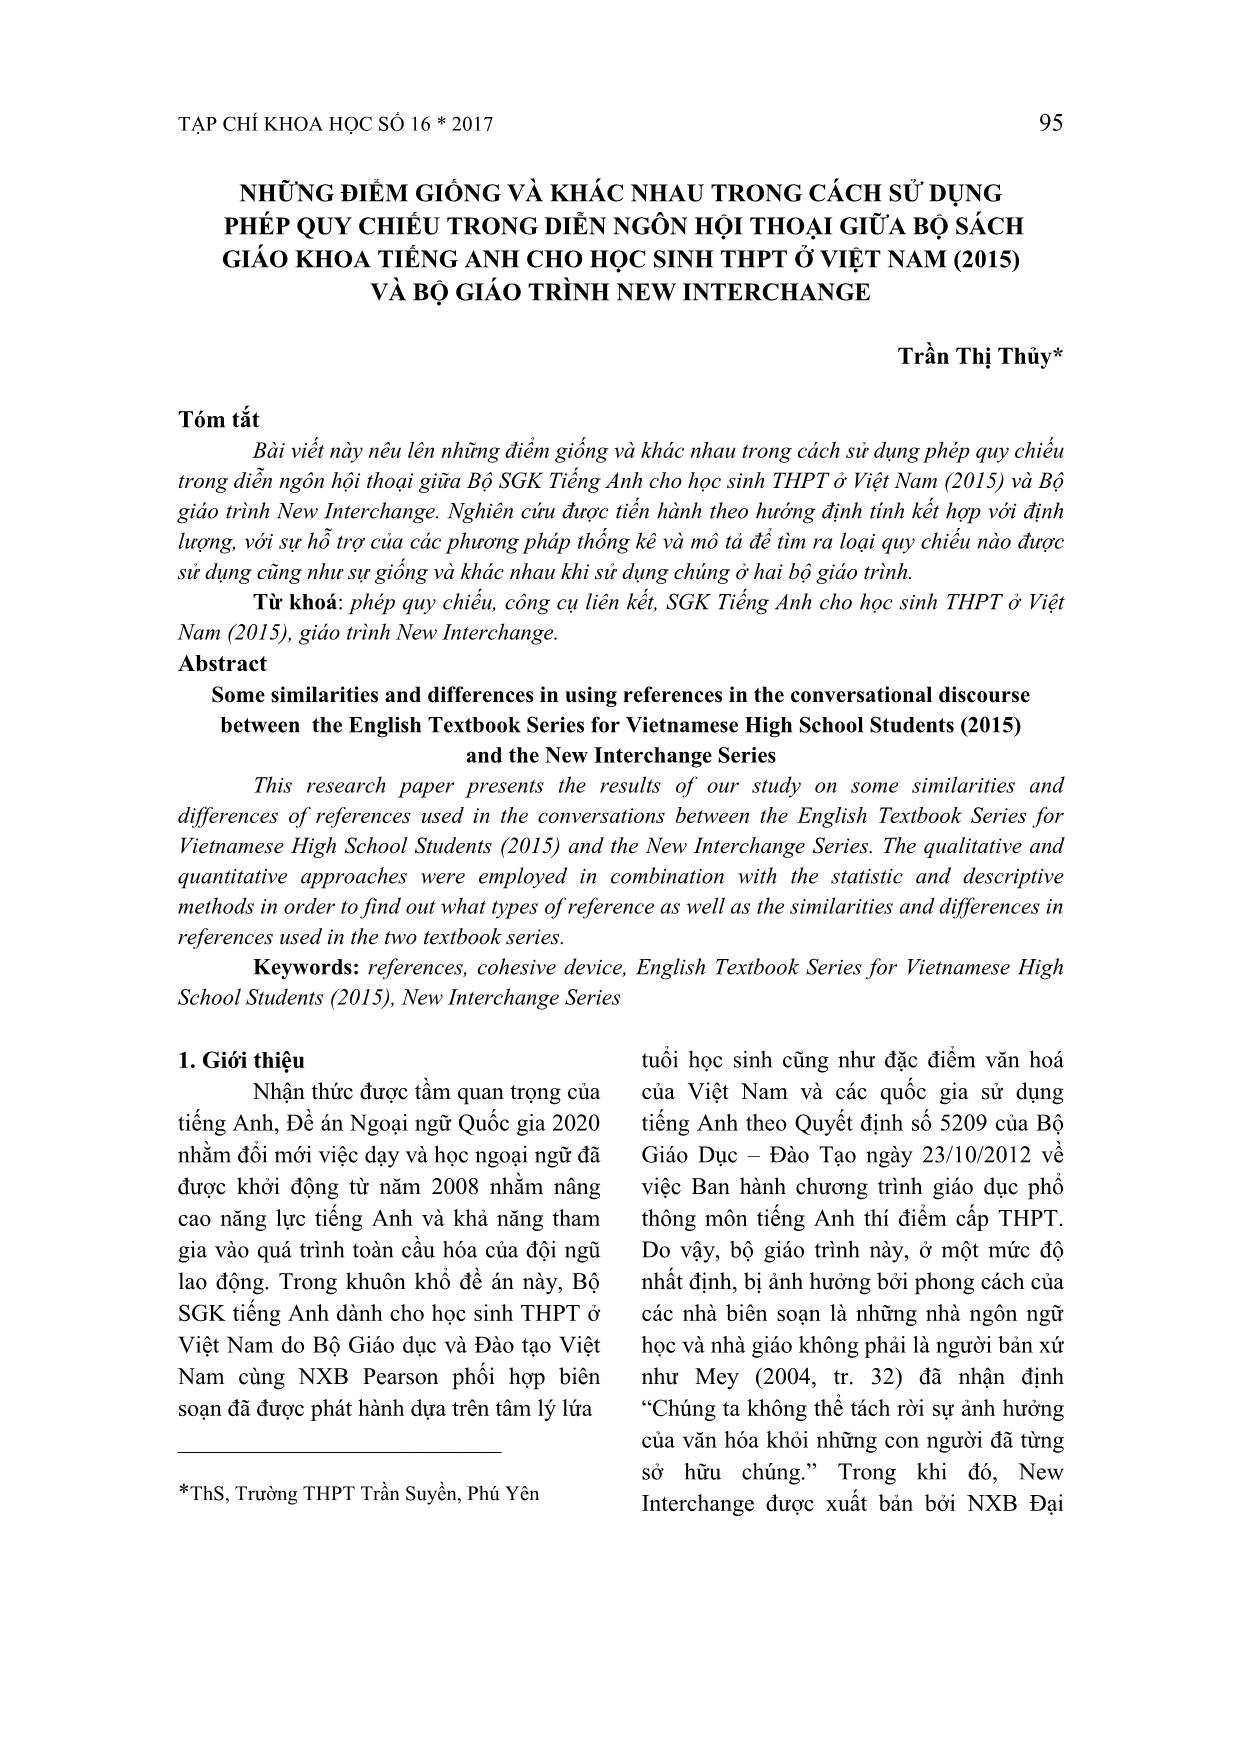 Những điểm giống và khác nhau trong cách sử dụng phép quy chiếu trong diễn ngôn hội thoại giữa bộ sách giáo khoa tiếng Anh cho học sinh THPT ở Việt Nam (2015) và bộ giáo trình New Interchange trang 1